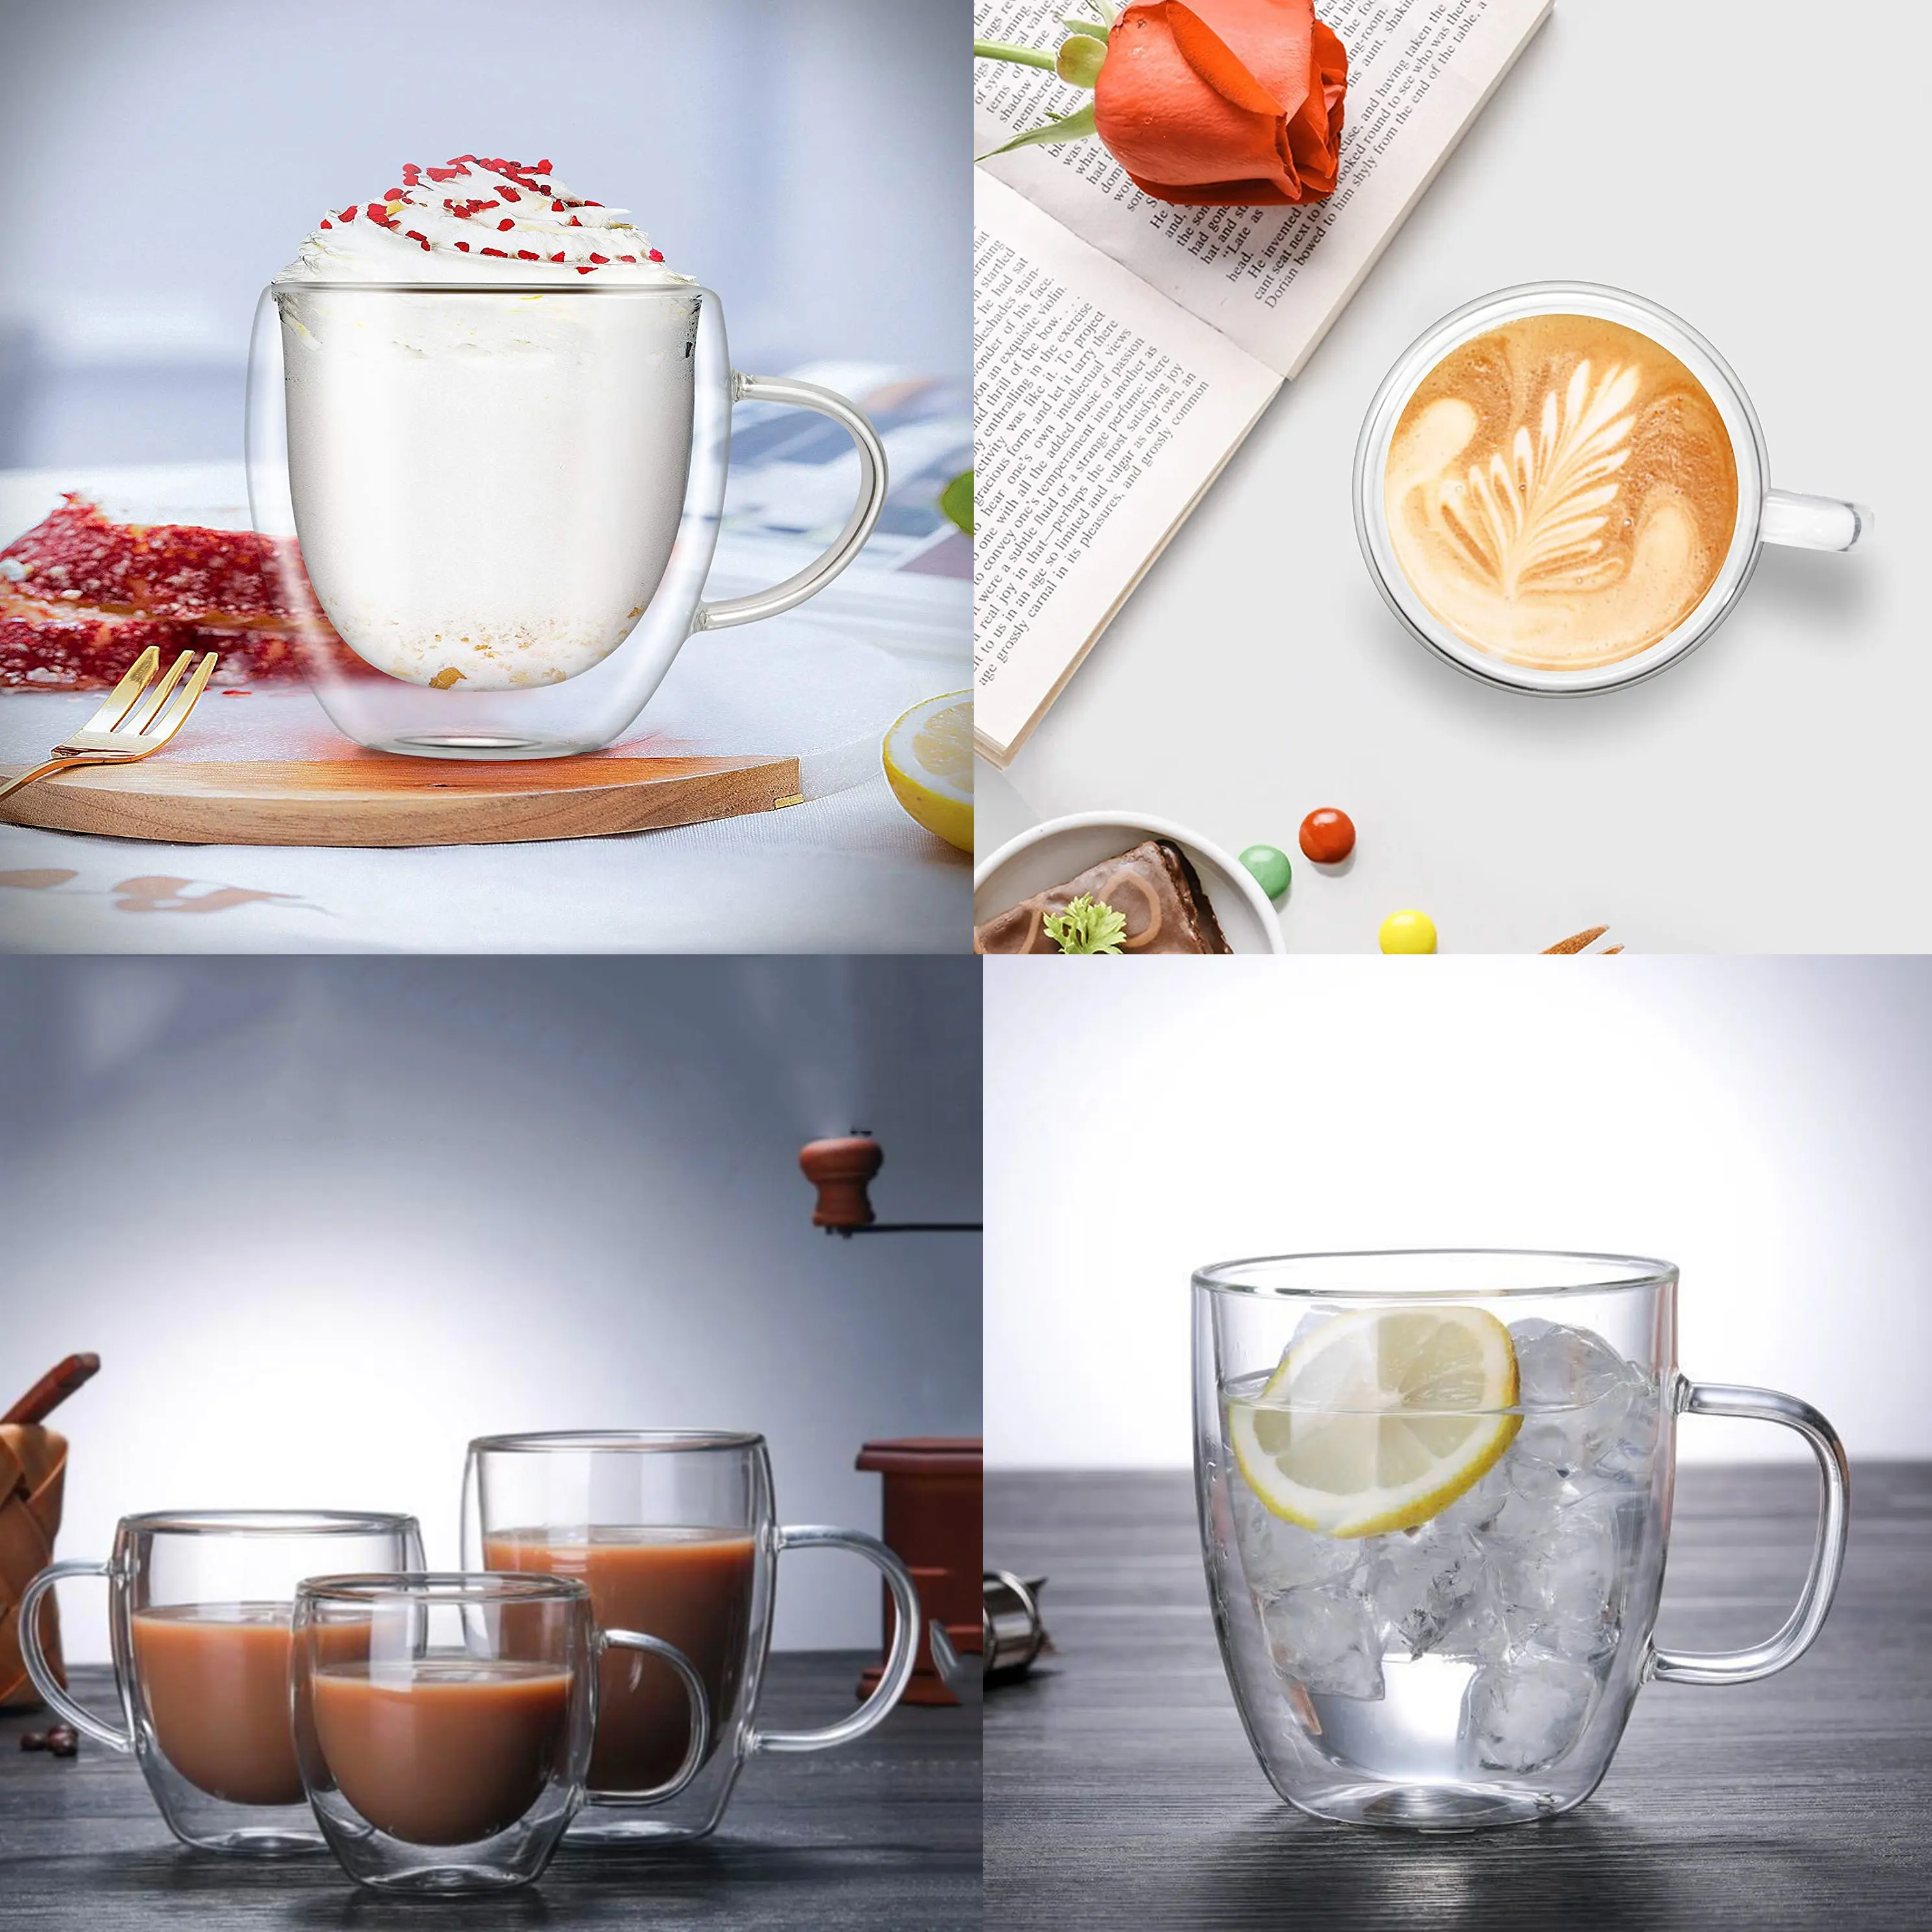 Óculos de parede dupla borosilicate, óculos para chá, café, leite, com alça, para latte, cappuccinos e bebidas